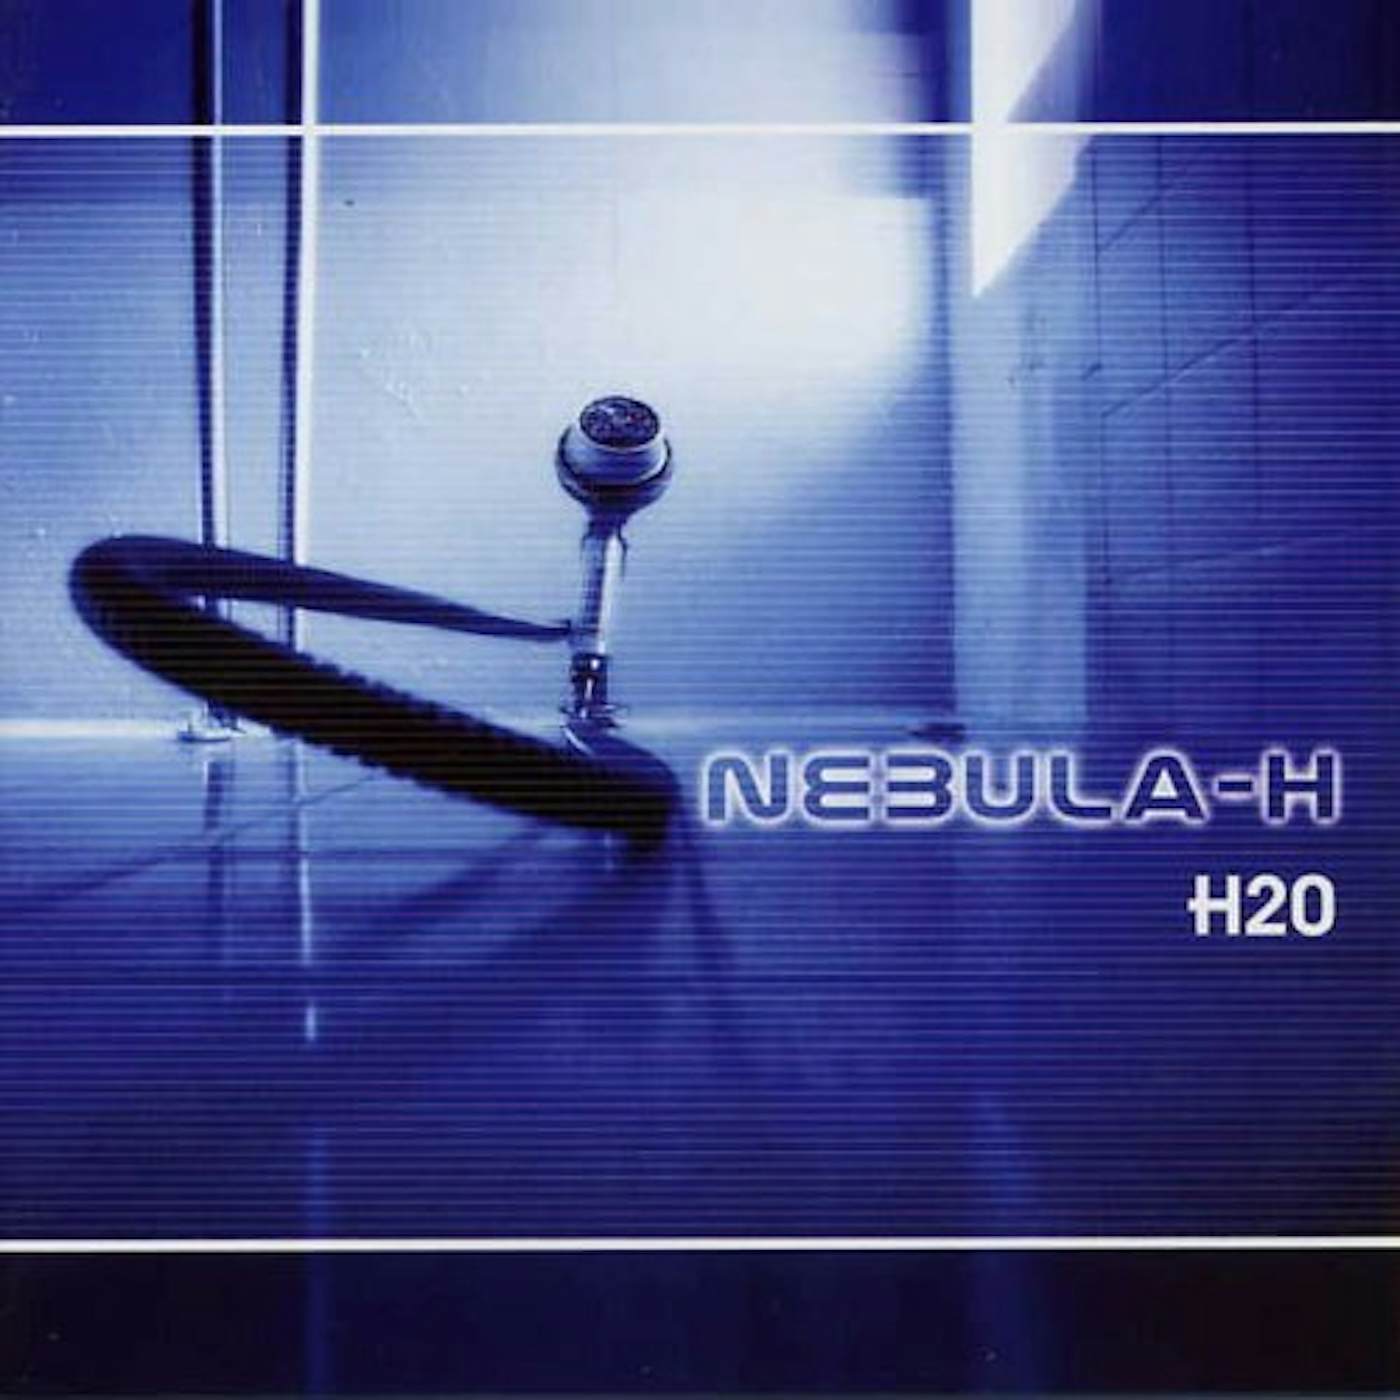 Nebula-H H2O CD